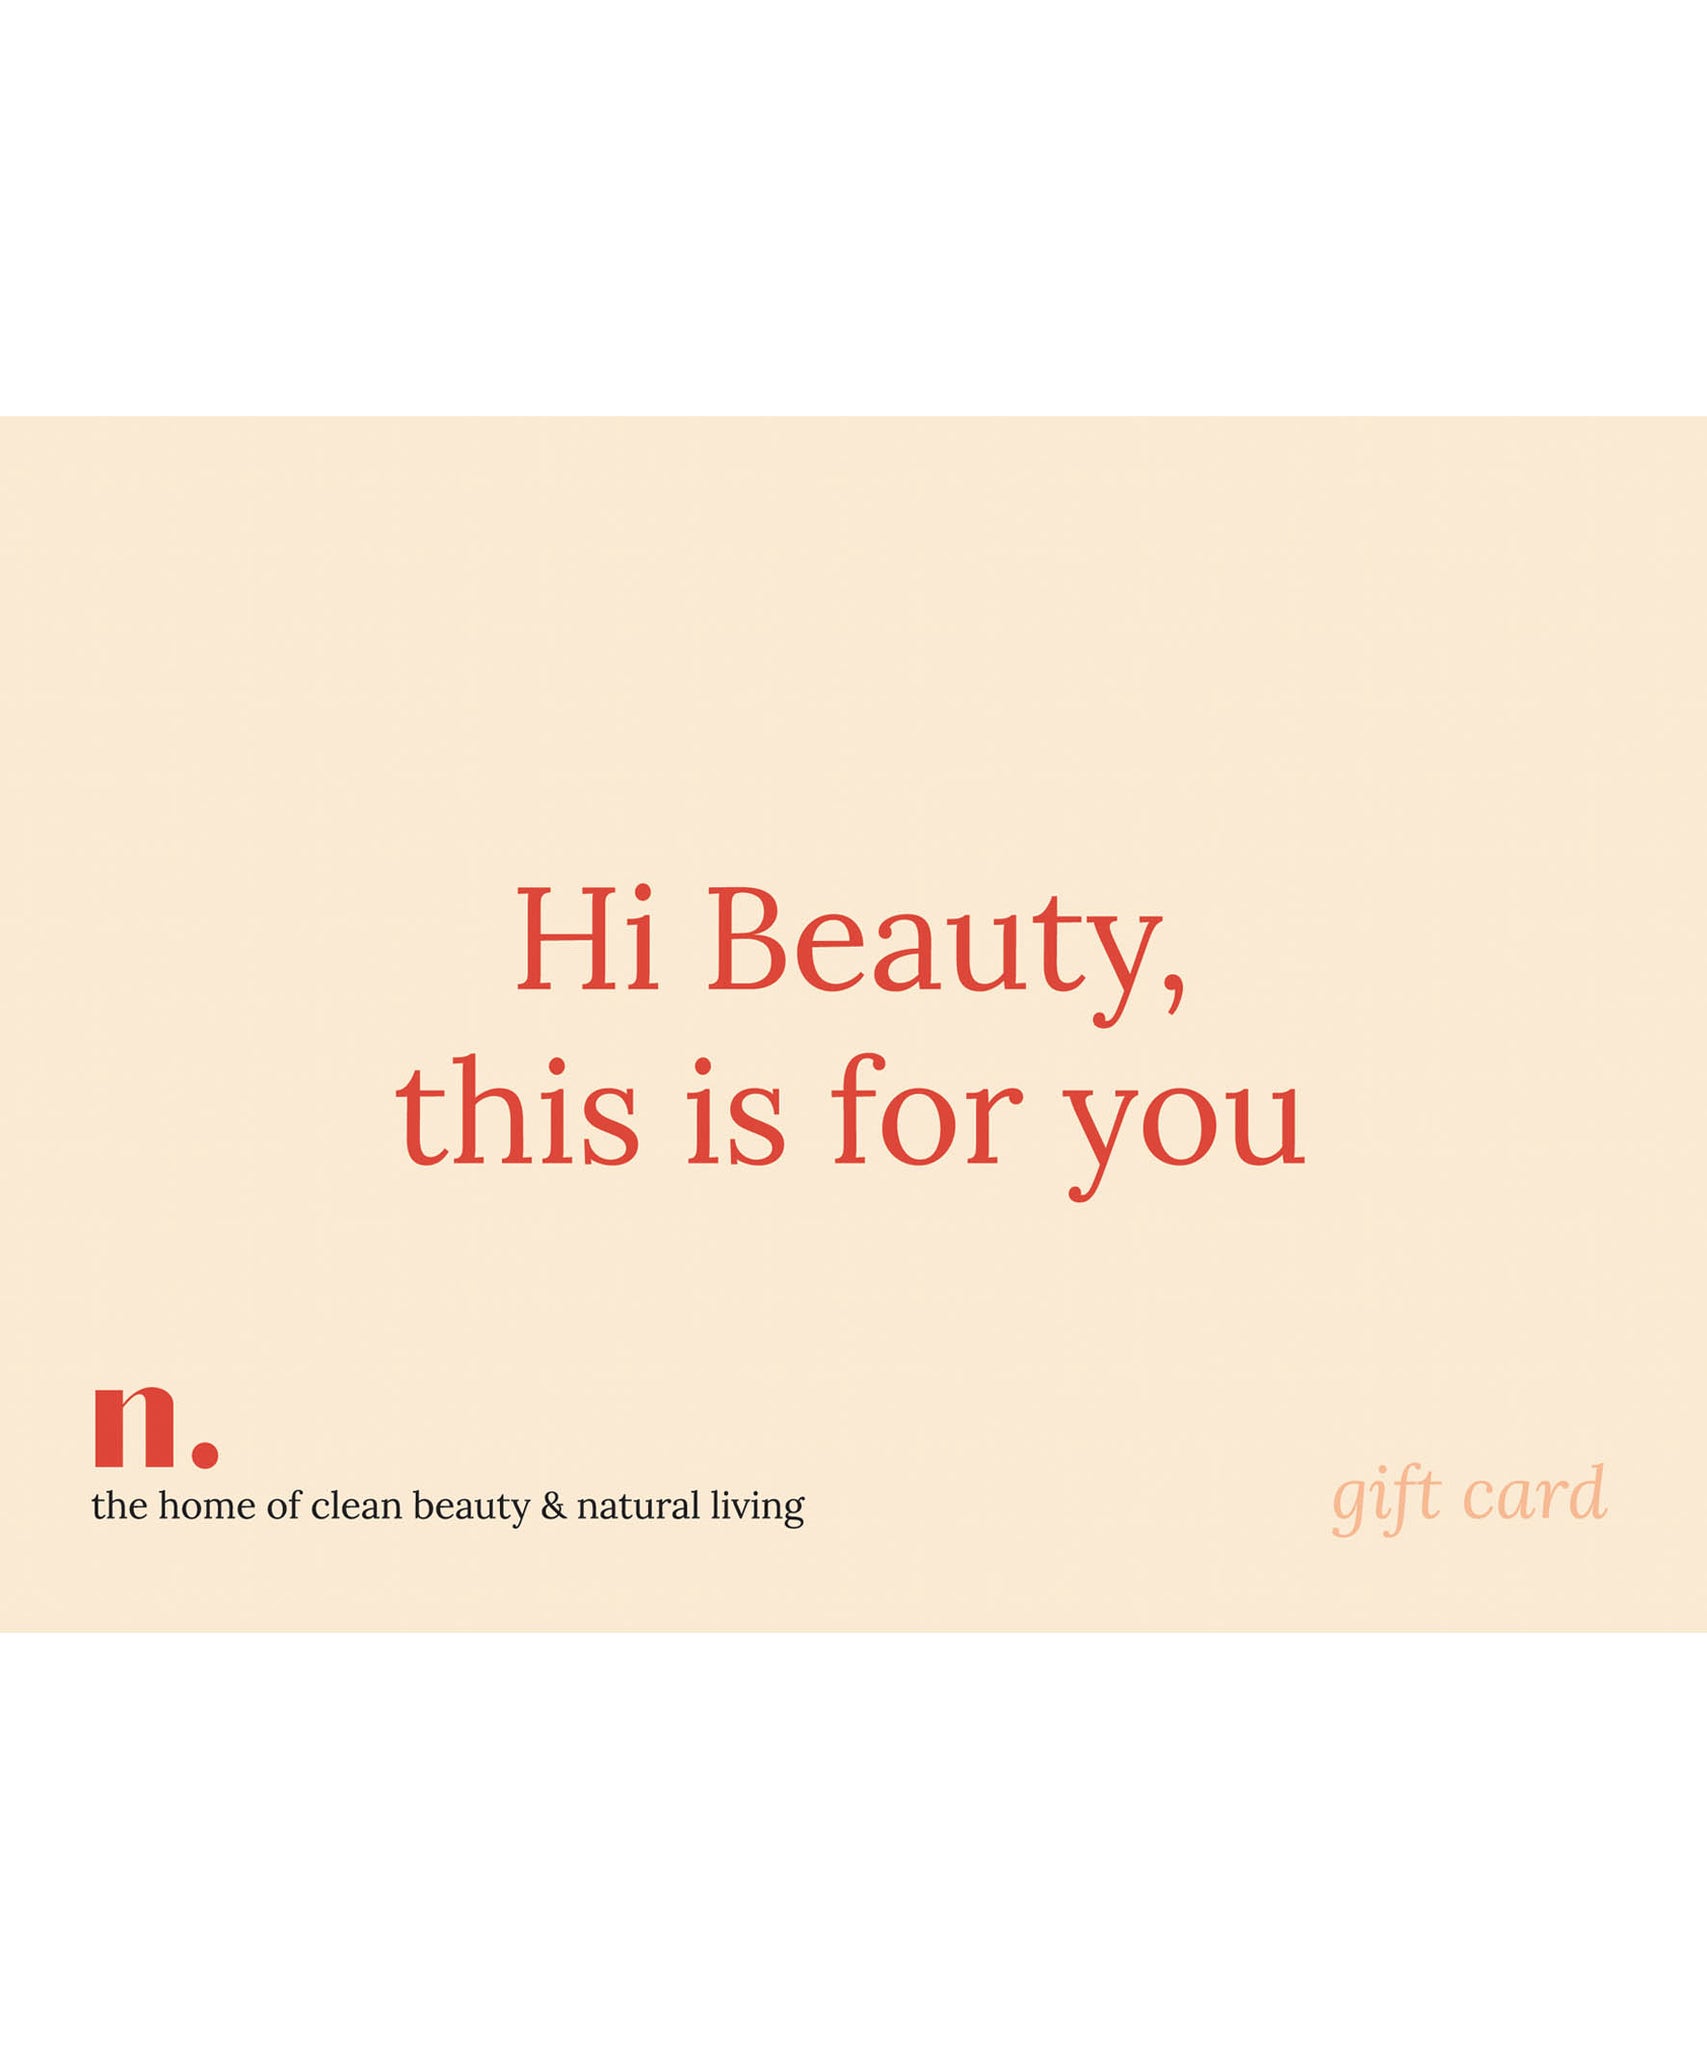 Gift card, cadeaukaart, cadeau bon, Nourished Nederland, groen cadeau, natural beauty, natuurlijke huidverzorgingsproducten